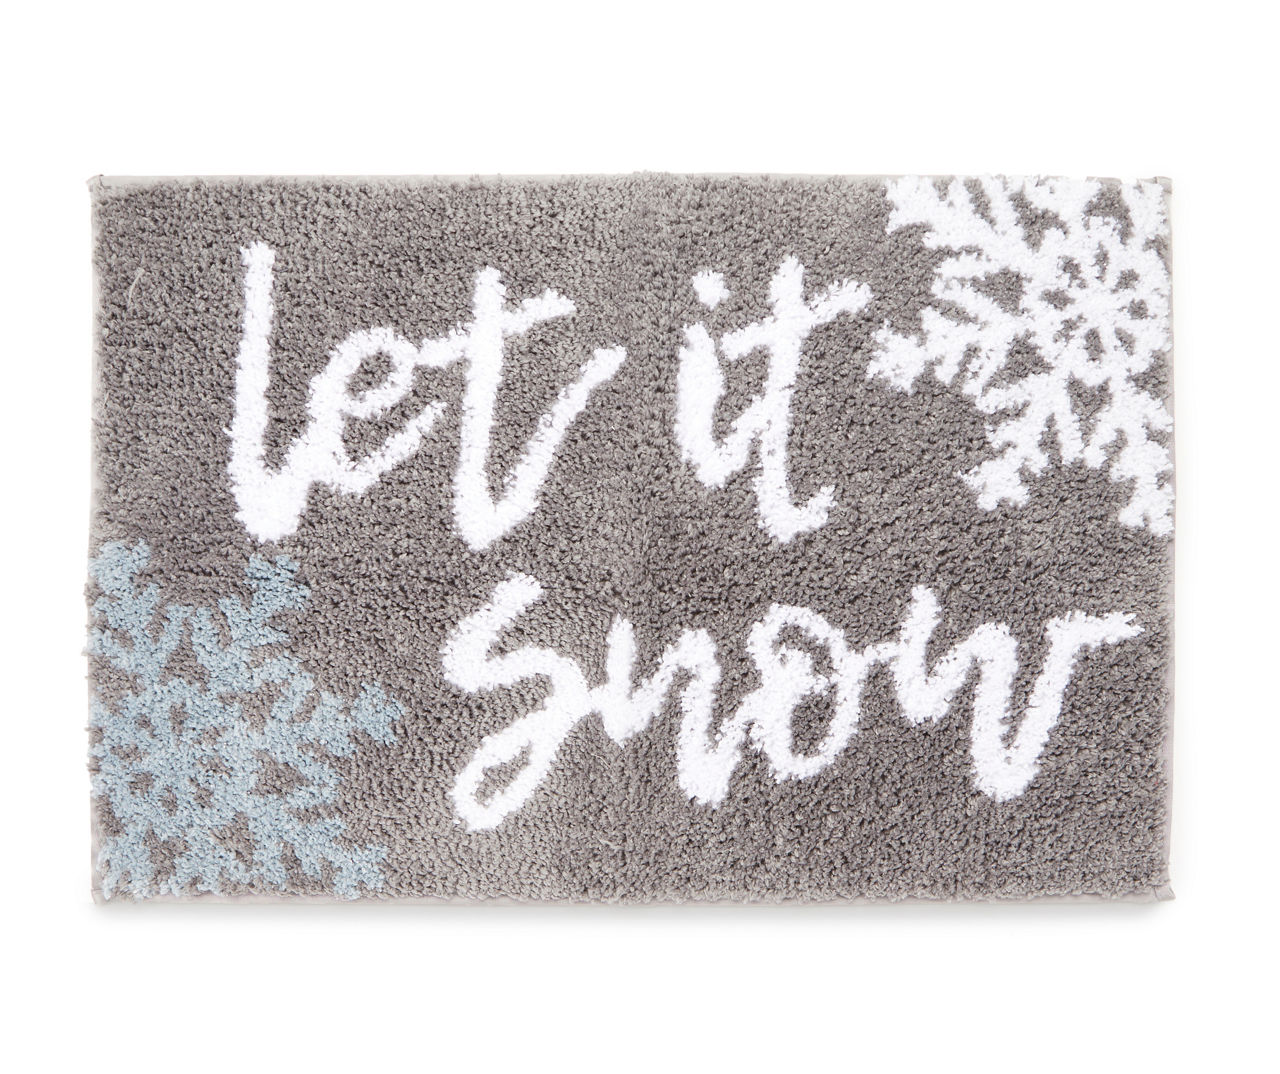 Let It Snow Doormat, Winter Doormat, Snowflake Doormat